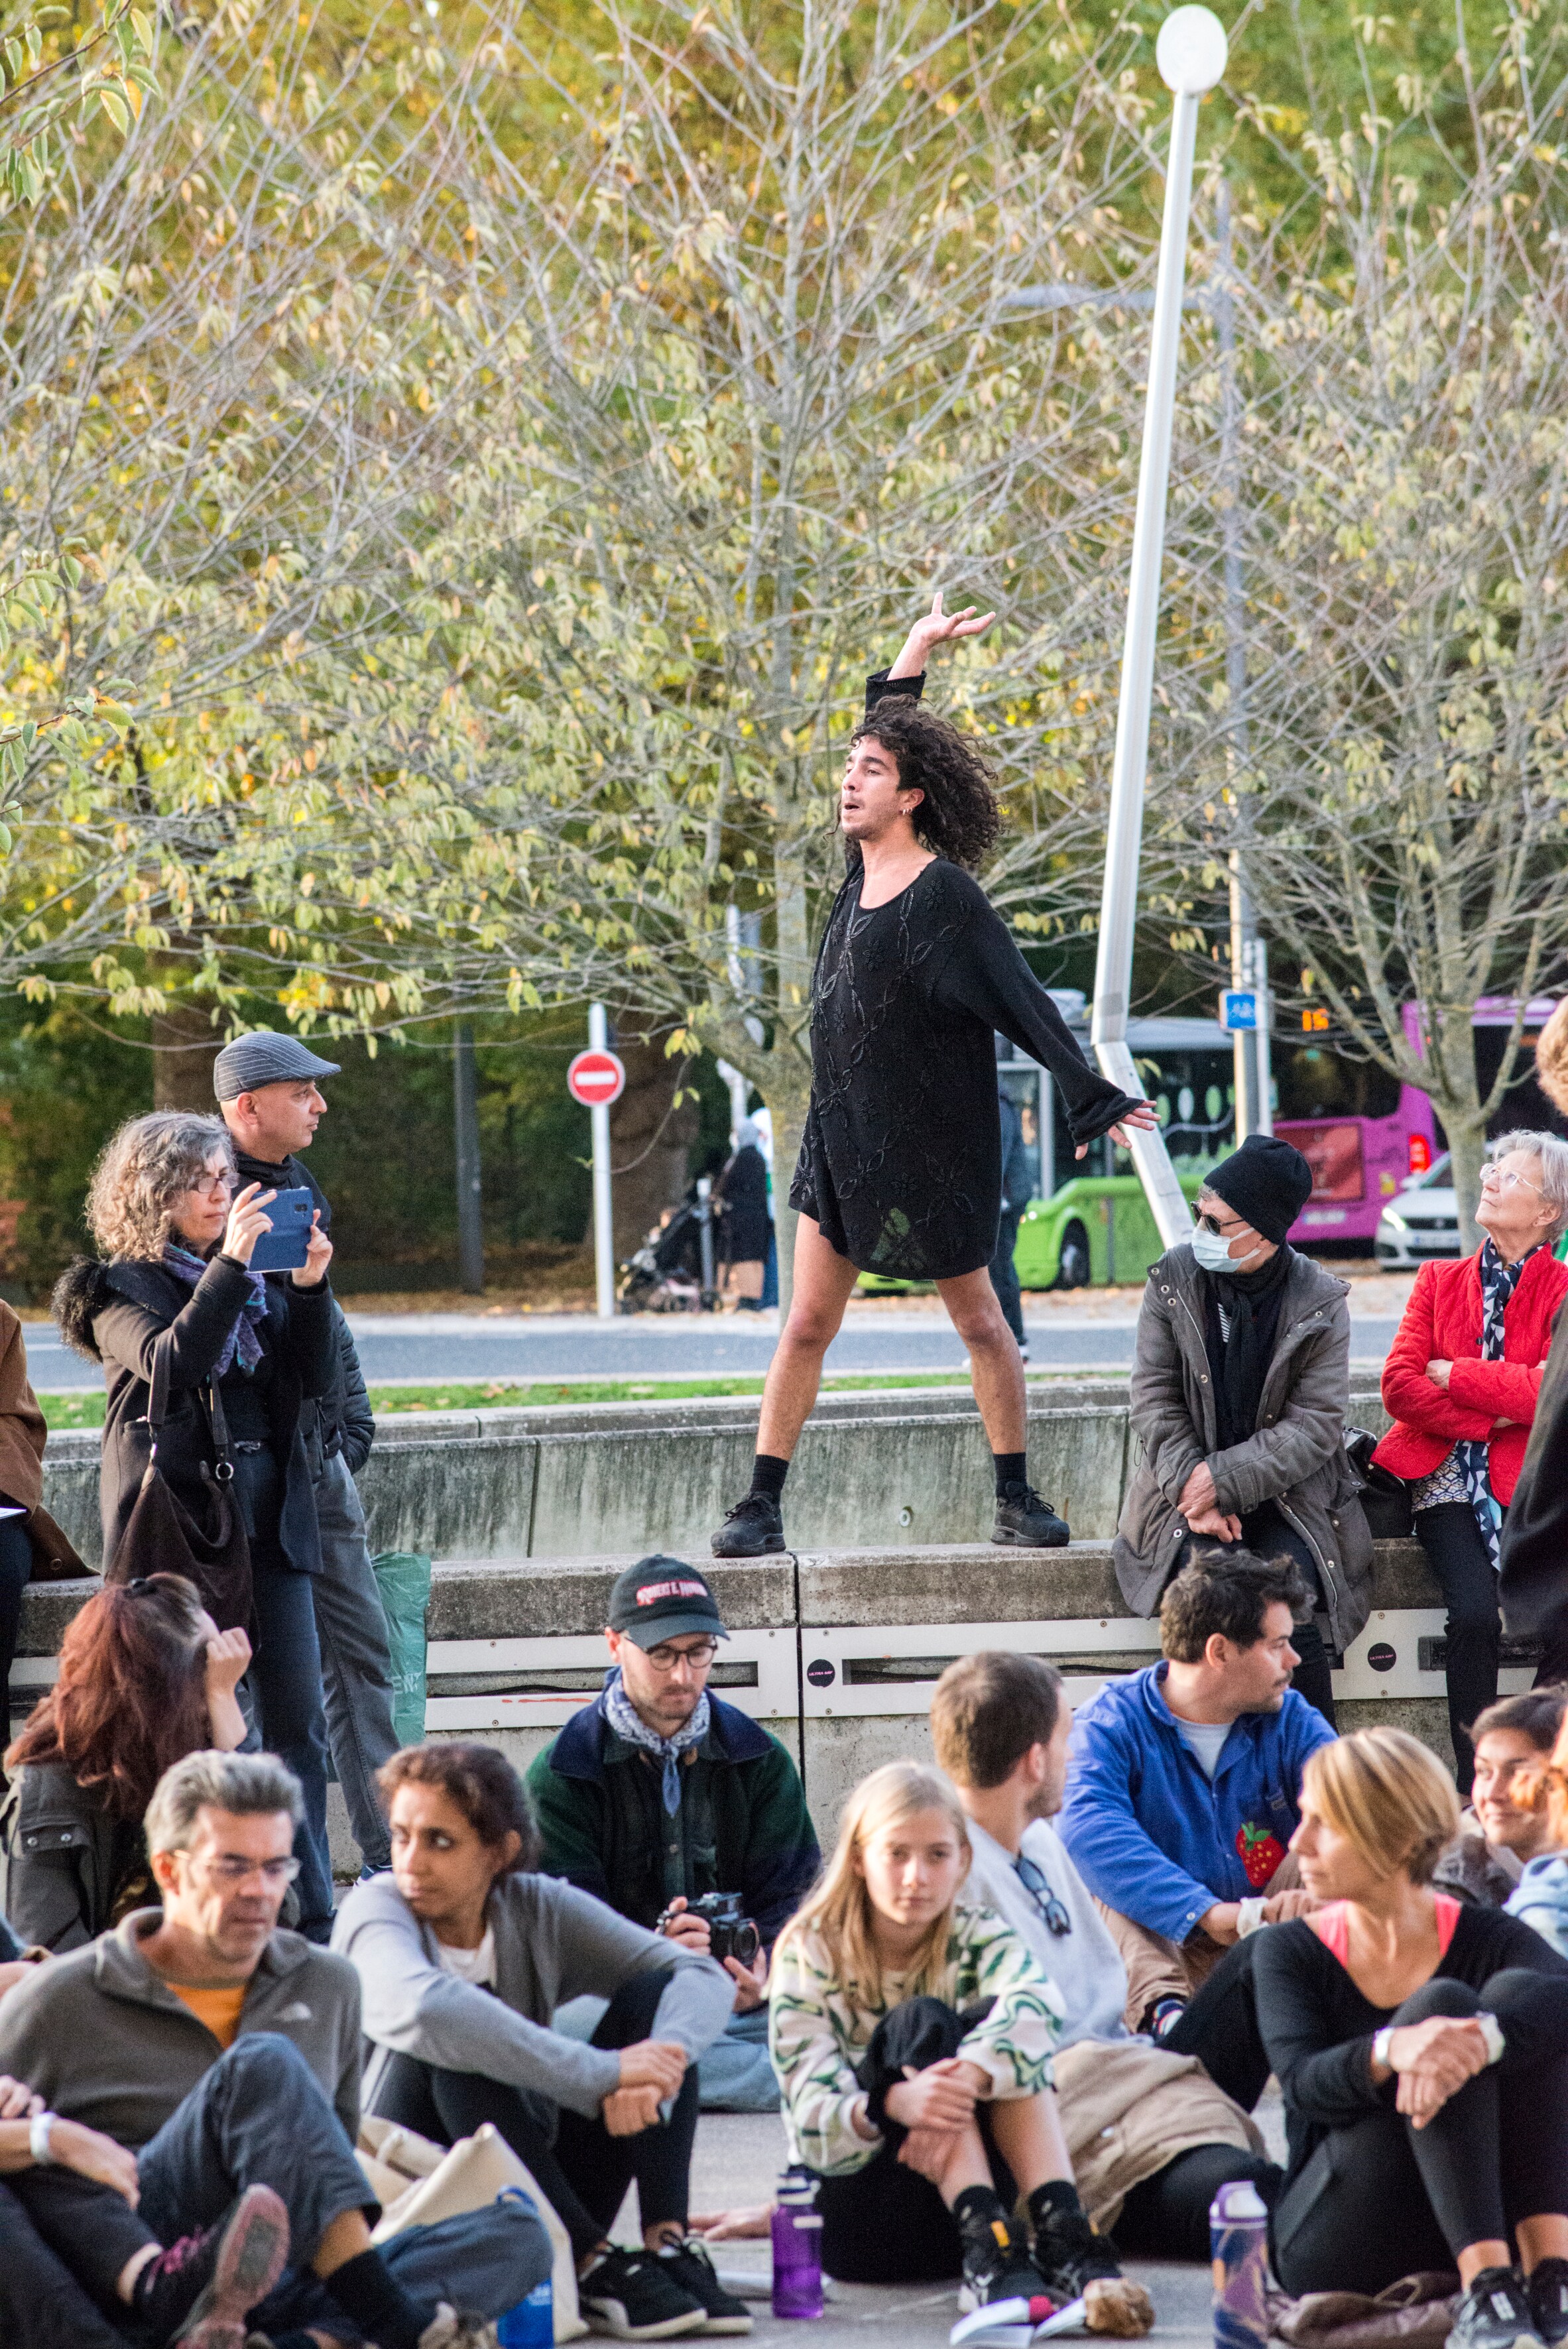 Danseur vêtu d’une tunique noire, debout sur un muret en béton au milieu du public assis en tailleur